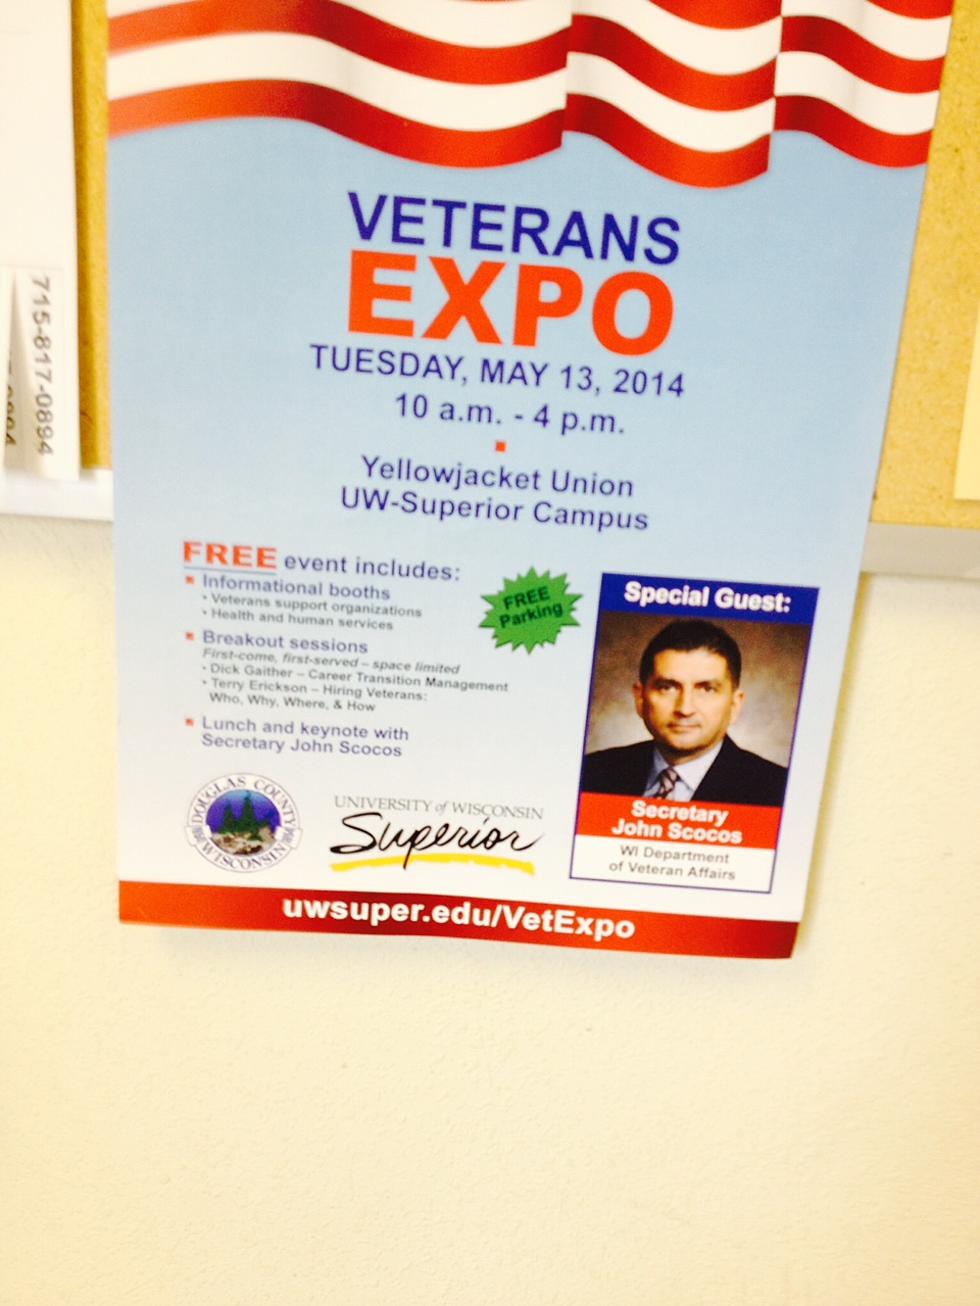 UW-Superior & Douglas County Veterans Expo Tuesday May 13th